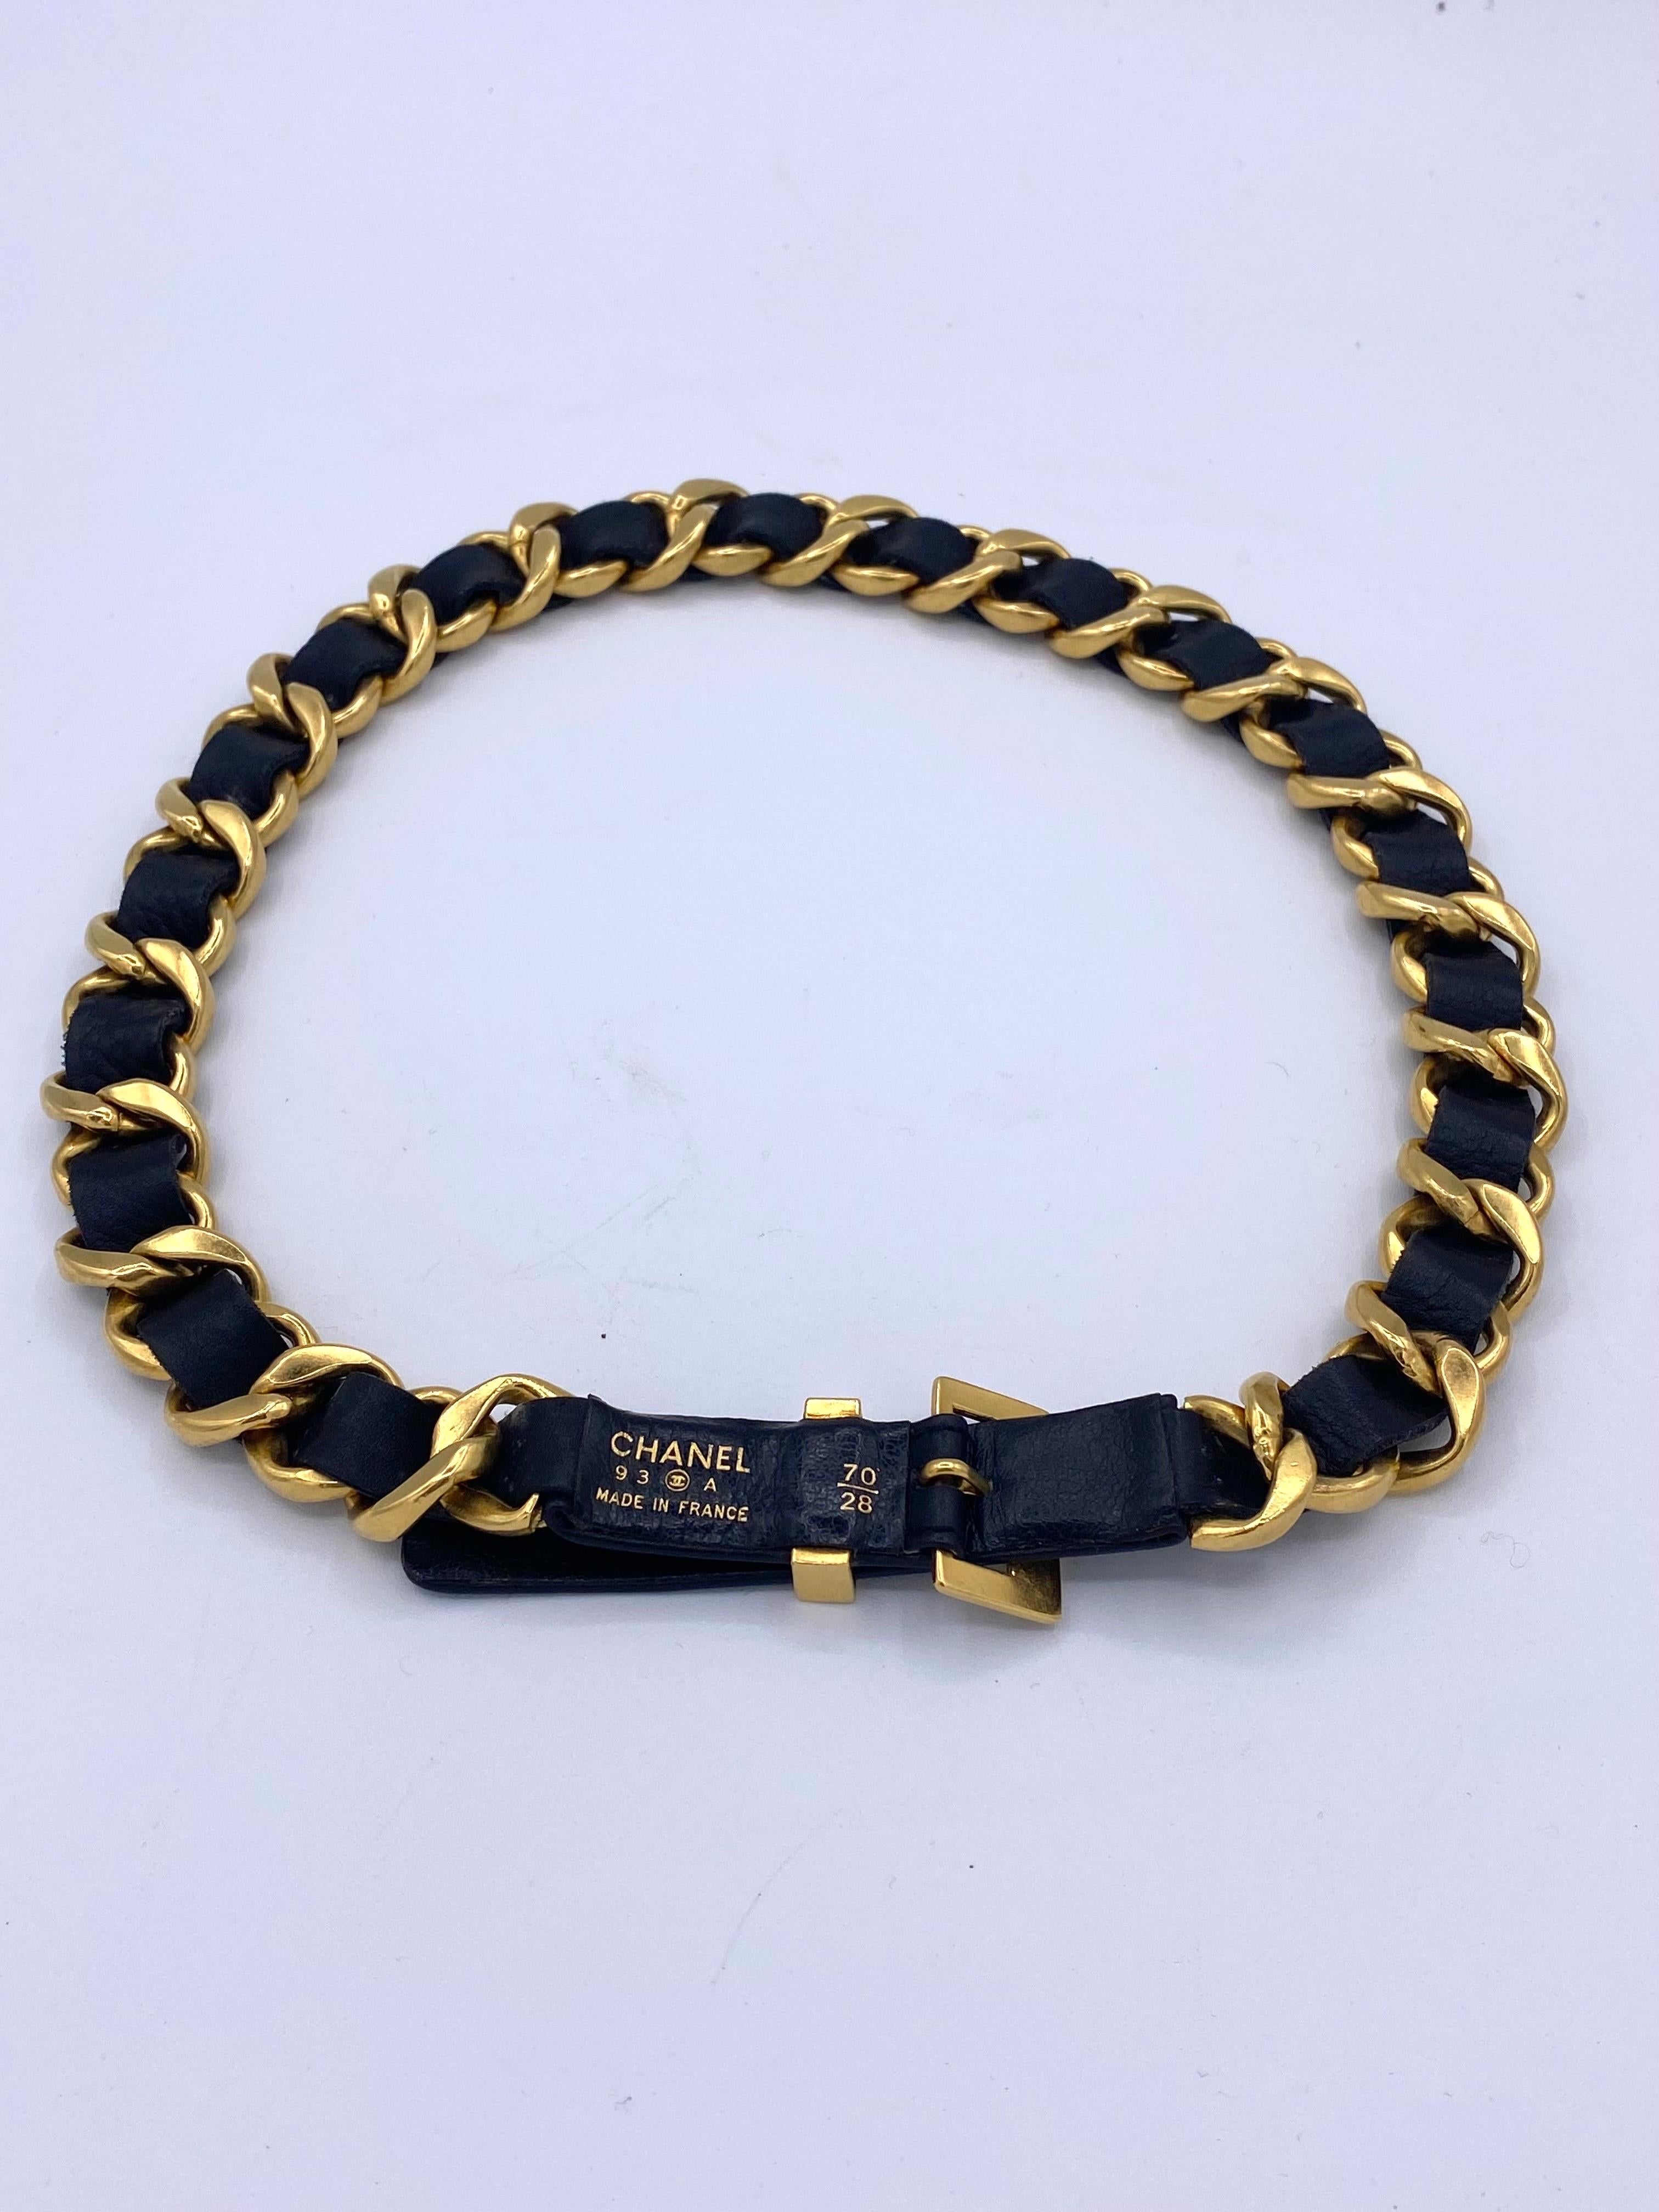 Chanel Gürtel aus goldener Kette, verflochten mit schwarzem Leder aus den 90er Jahren.
Gestempelt 93 A
Hergestellt in Frankreich
Verstellbarer Schnallenverschluss mit 3 Löchern (69cm-71cm-73cm)
Breite der Kette 2,2 cm
mit der Schachtel geliefert.